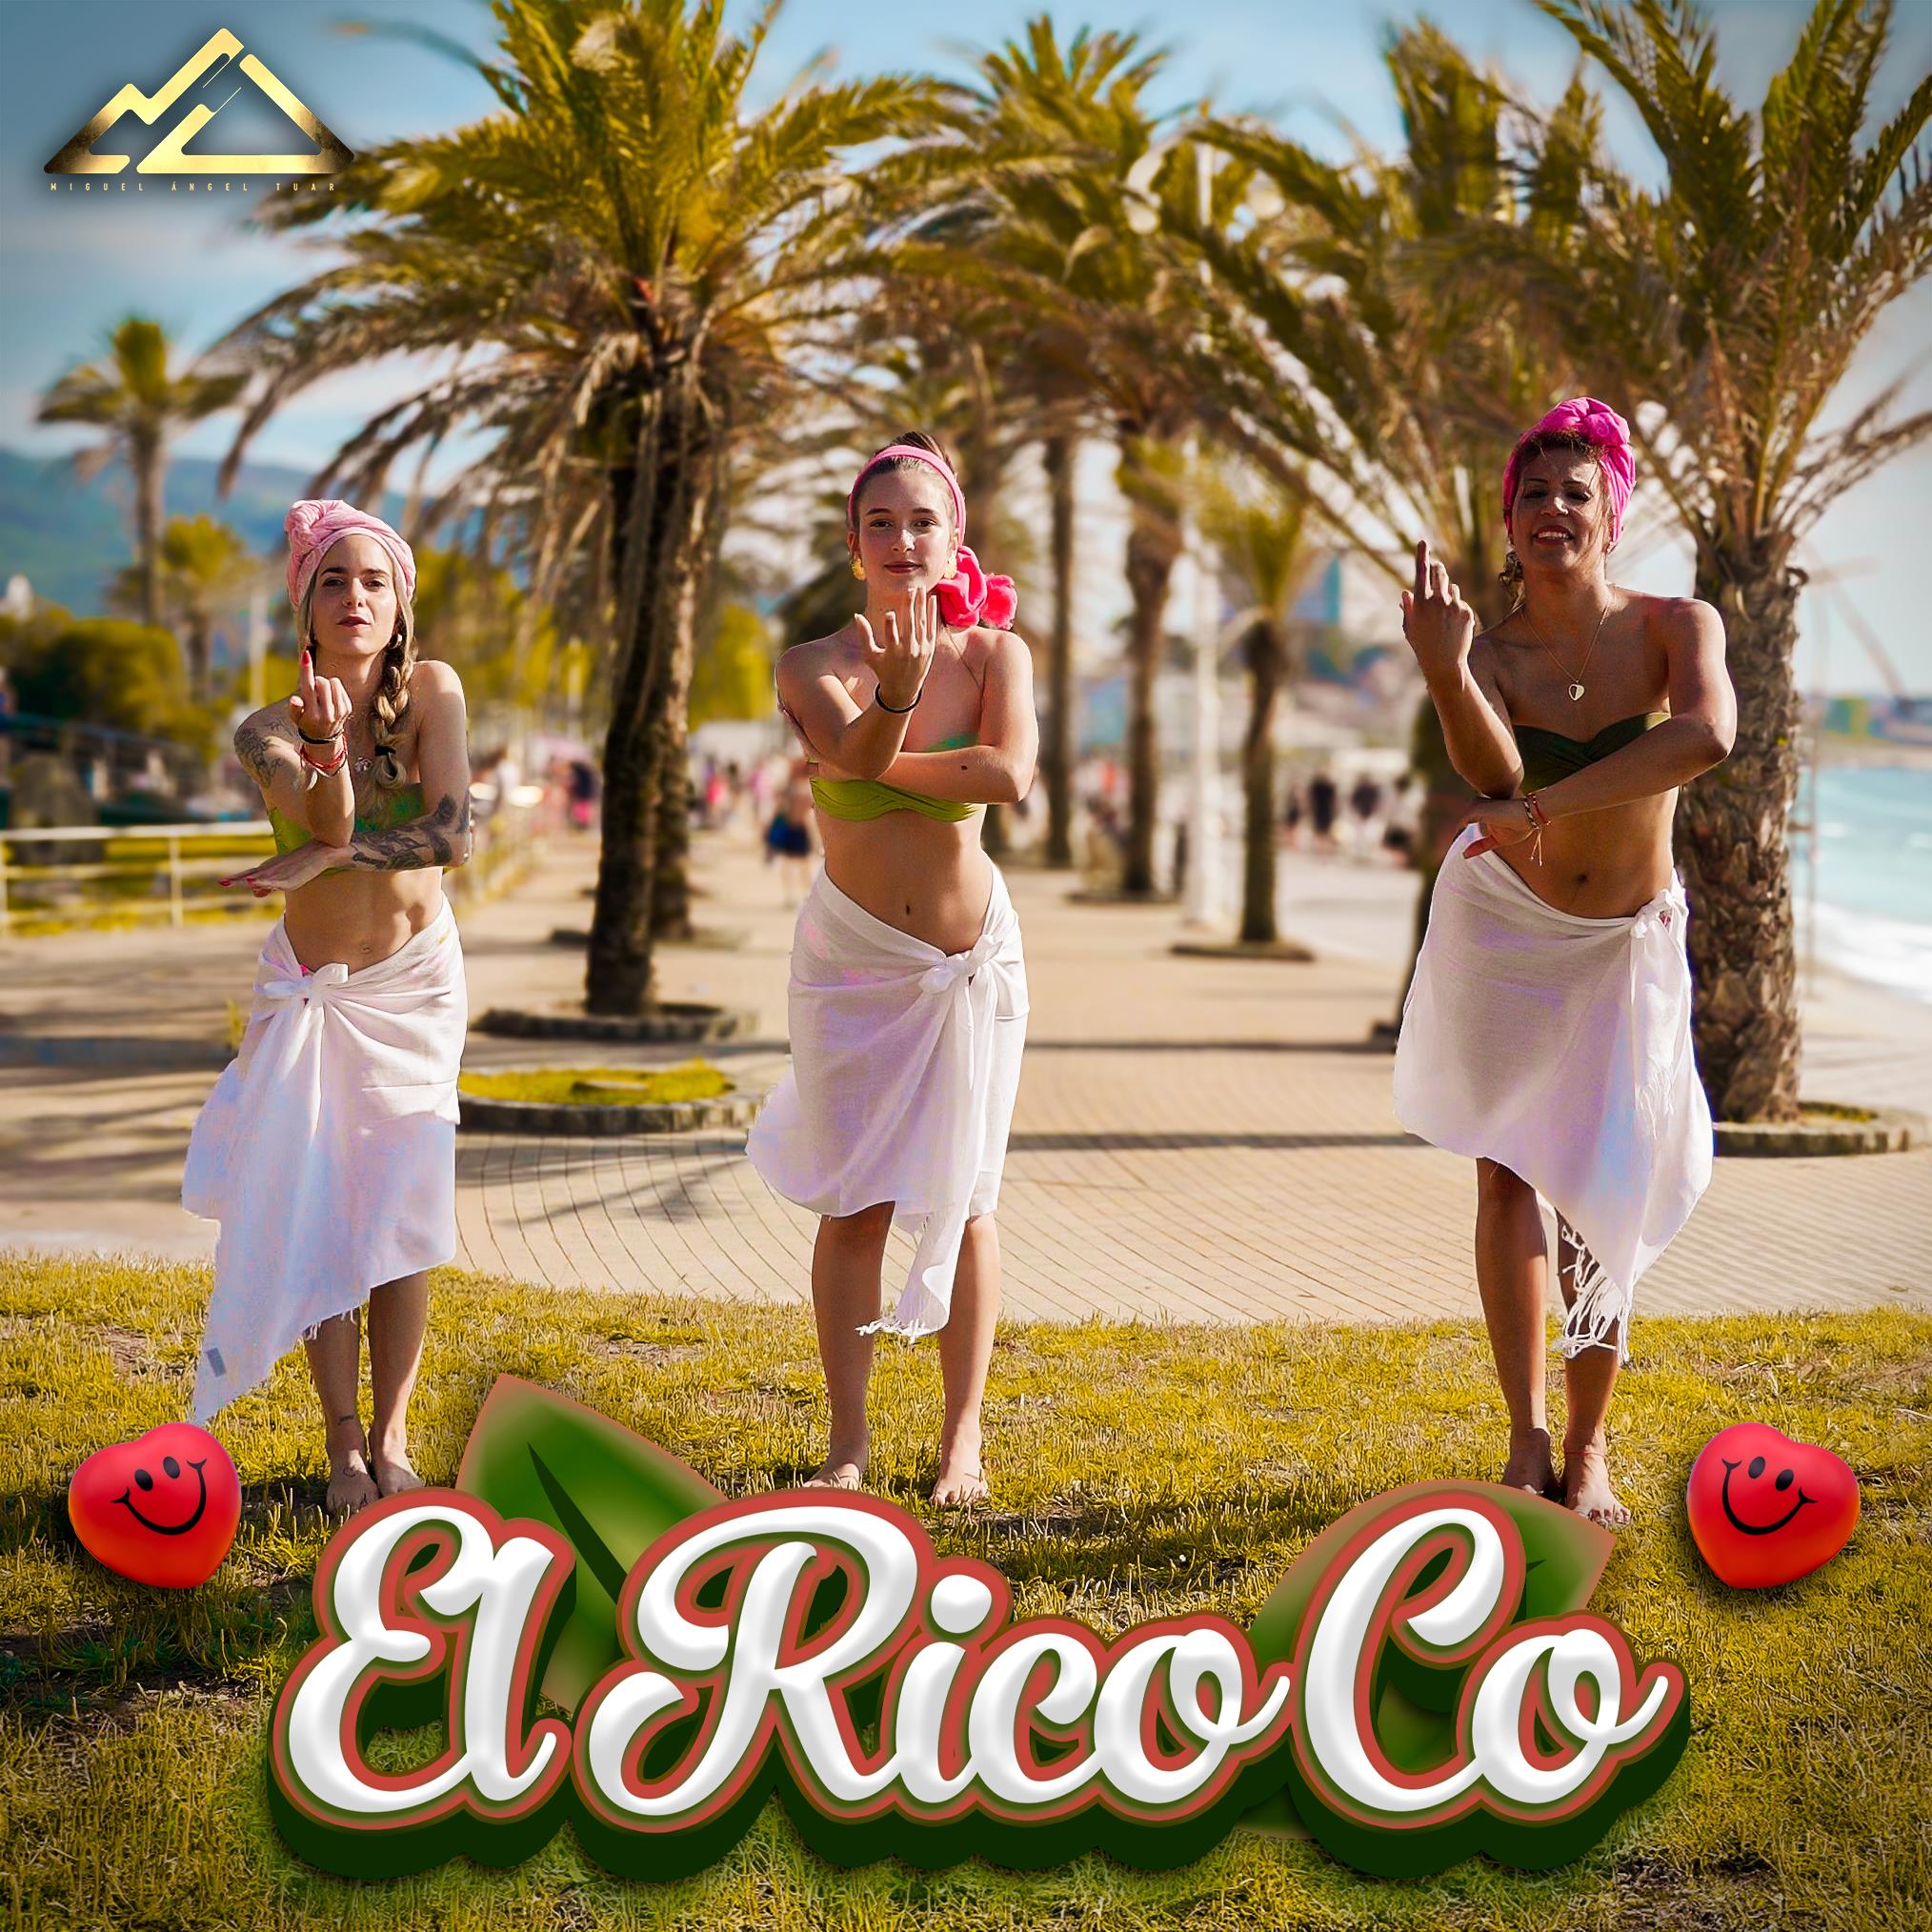 El Rico Co